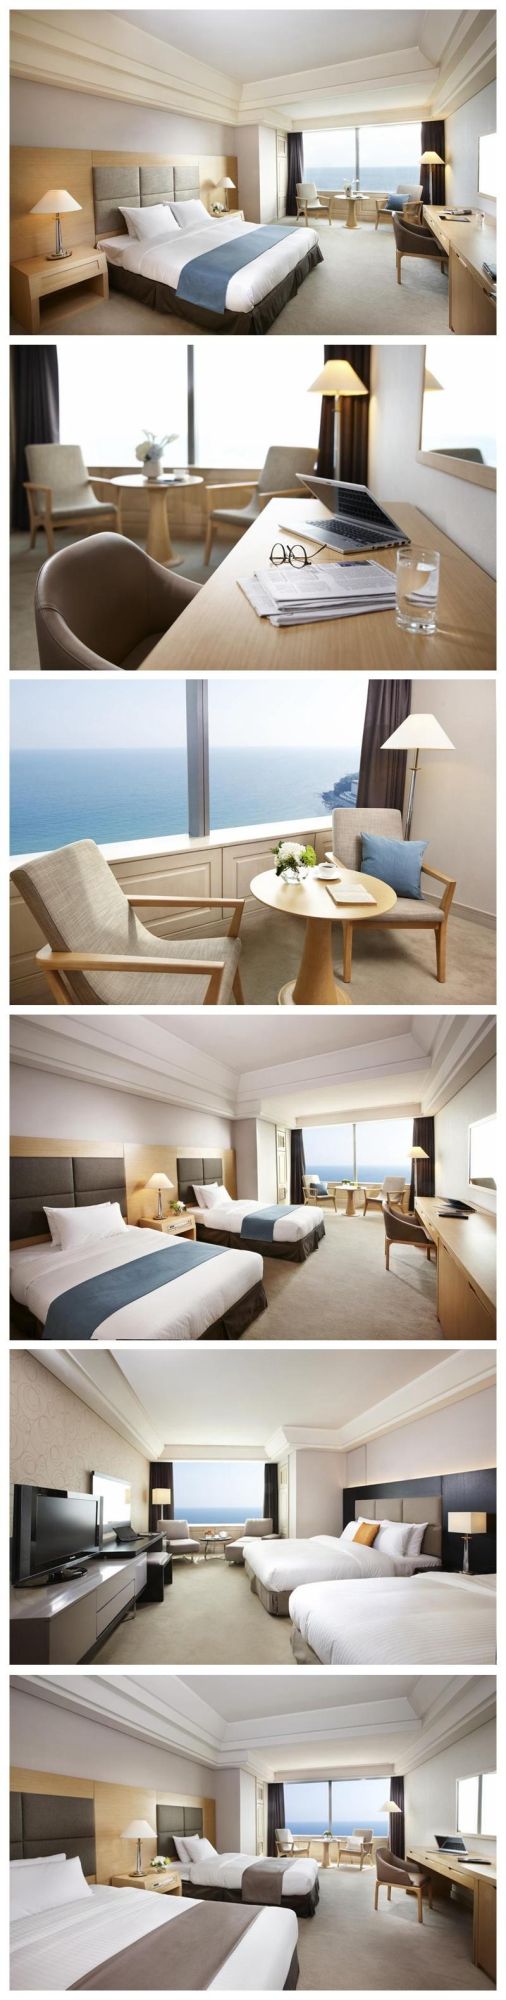 Super 8 Modern Wooden Hotel Bedroom Furniture Sets For3- 5 Stars Hotel